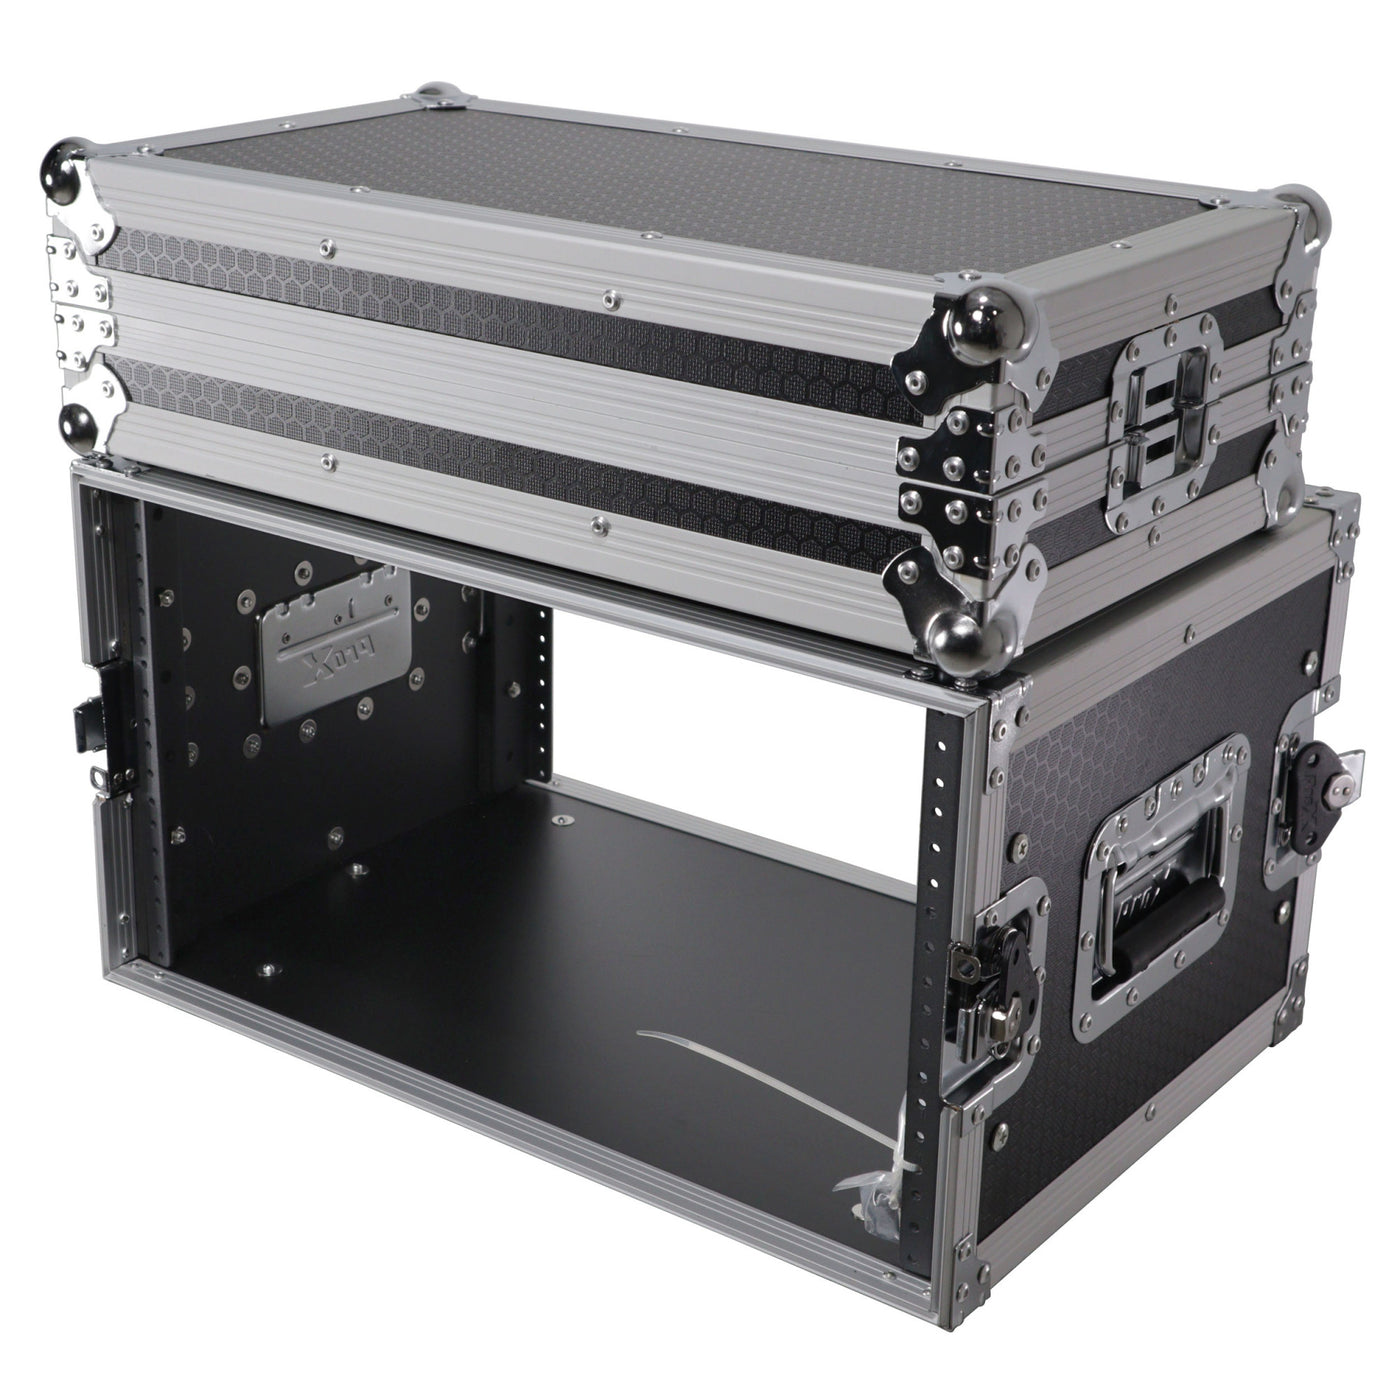 ProX X-6UE 6U Deluxe Effects Rack Case with Handles, Pro Audio Gear, 14" Deep, 19" Width